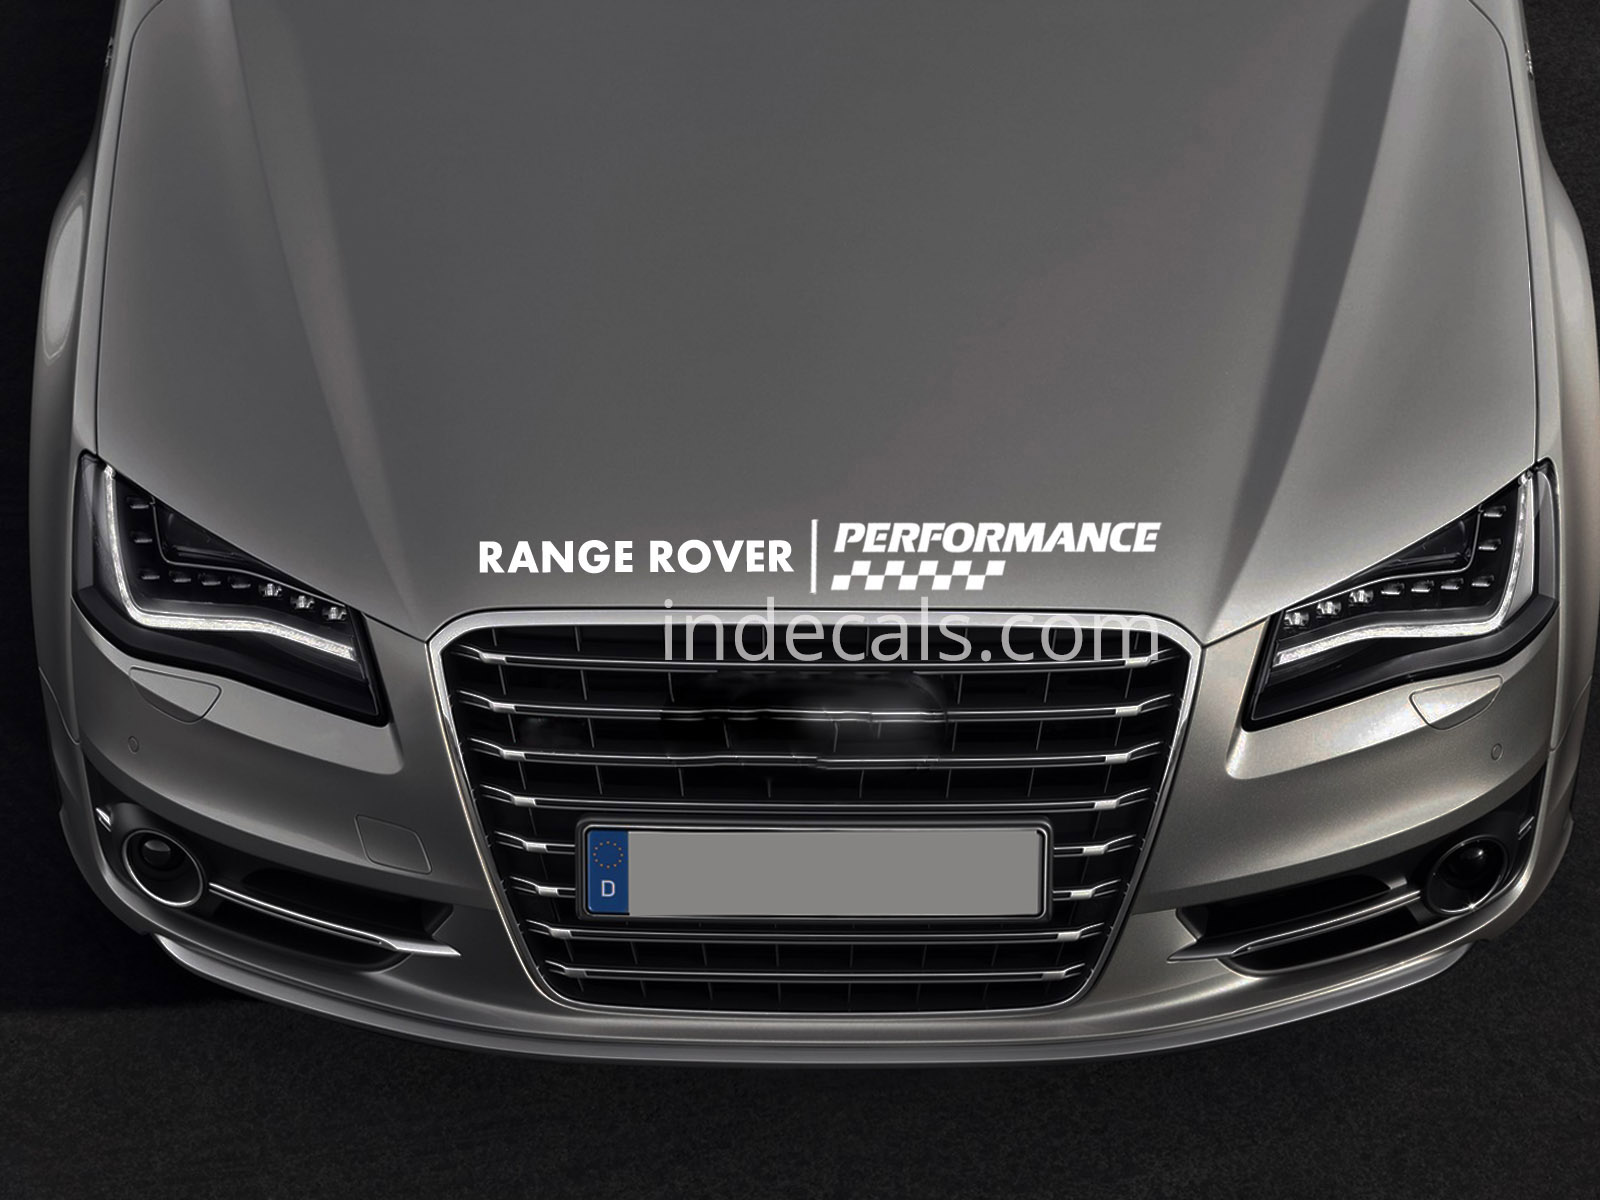 1 x Range Rover Peformance Sticker for Bonnet - White